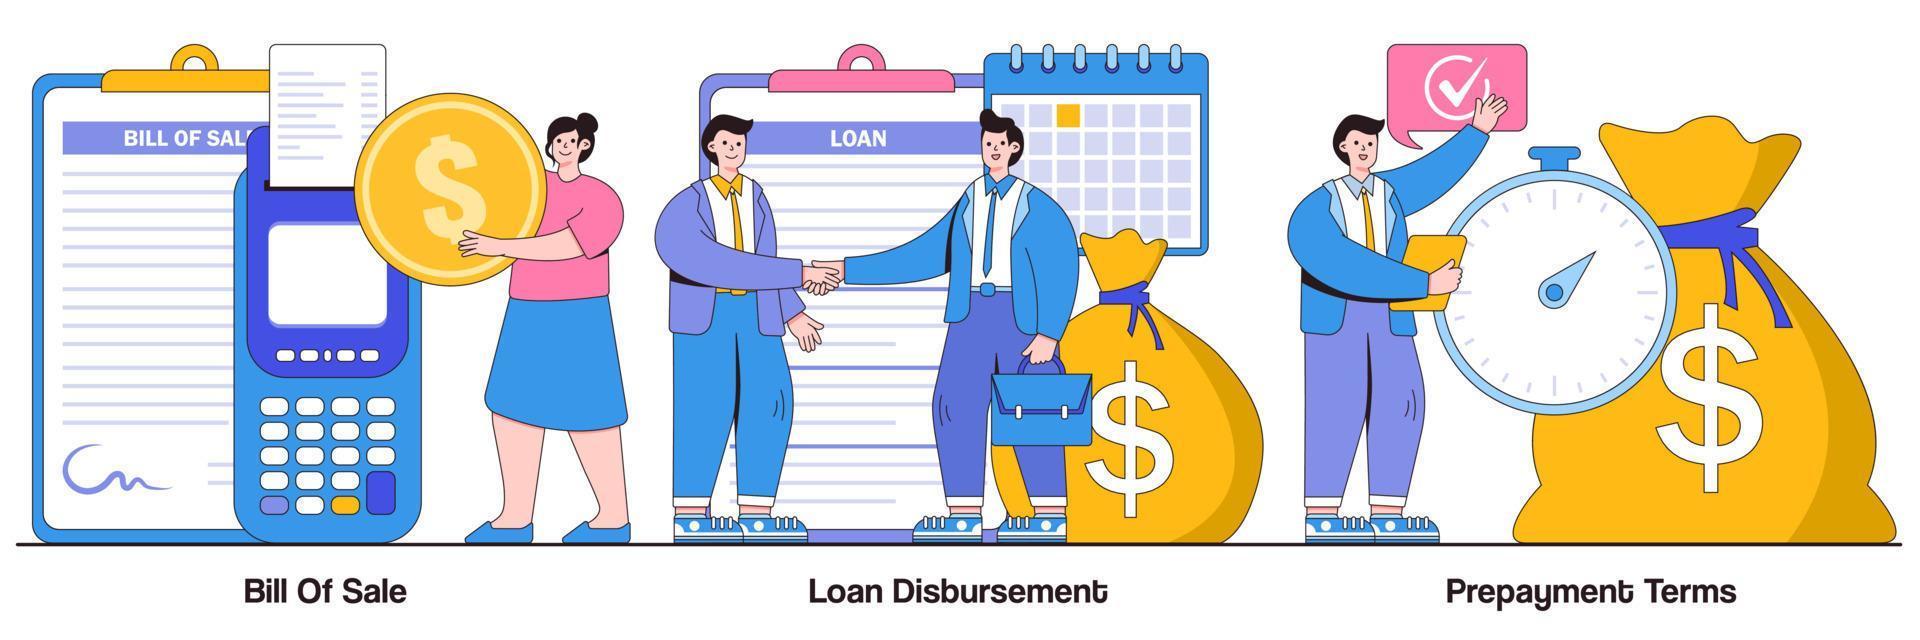 pacote ilustrado de fatura, desembolso de empréstimo e condições de pré-pagamento vetor